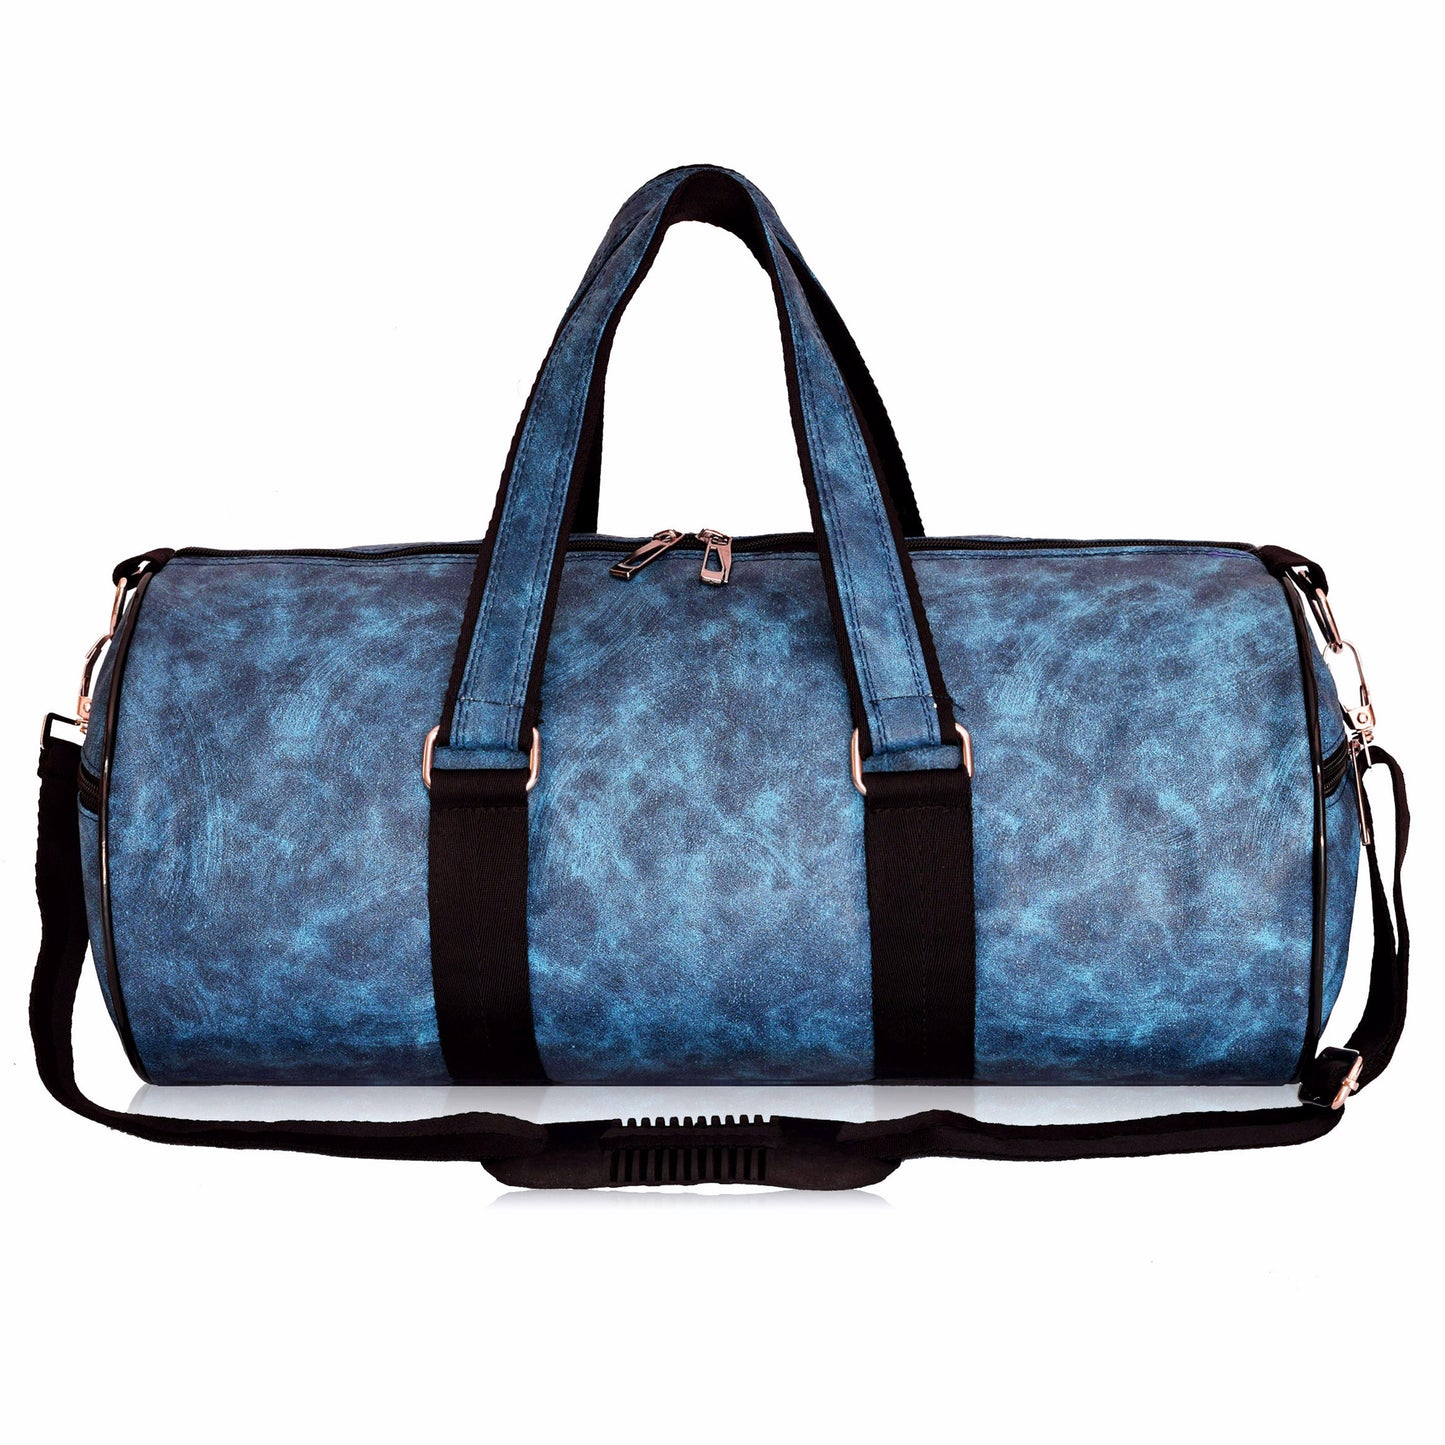 Crinds Duffel Bag - Cool Blue